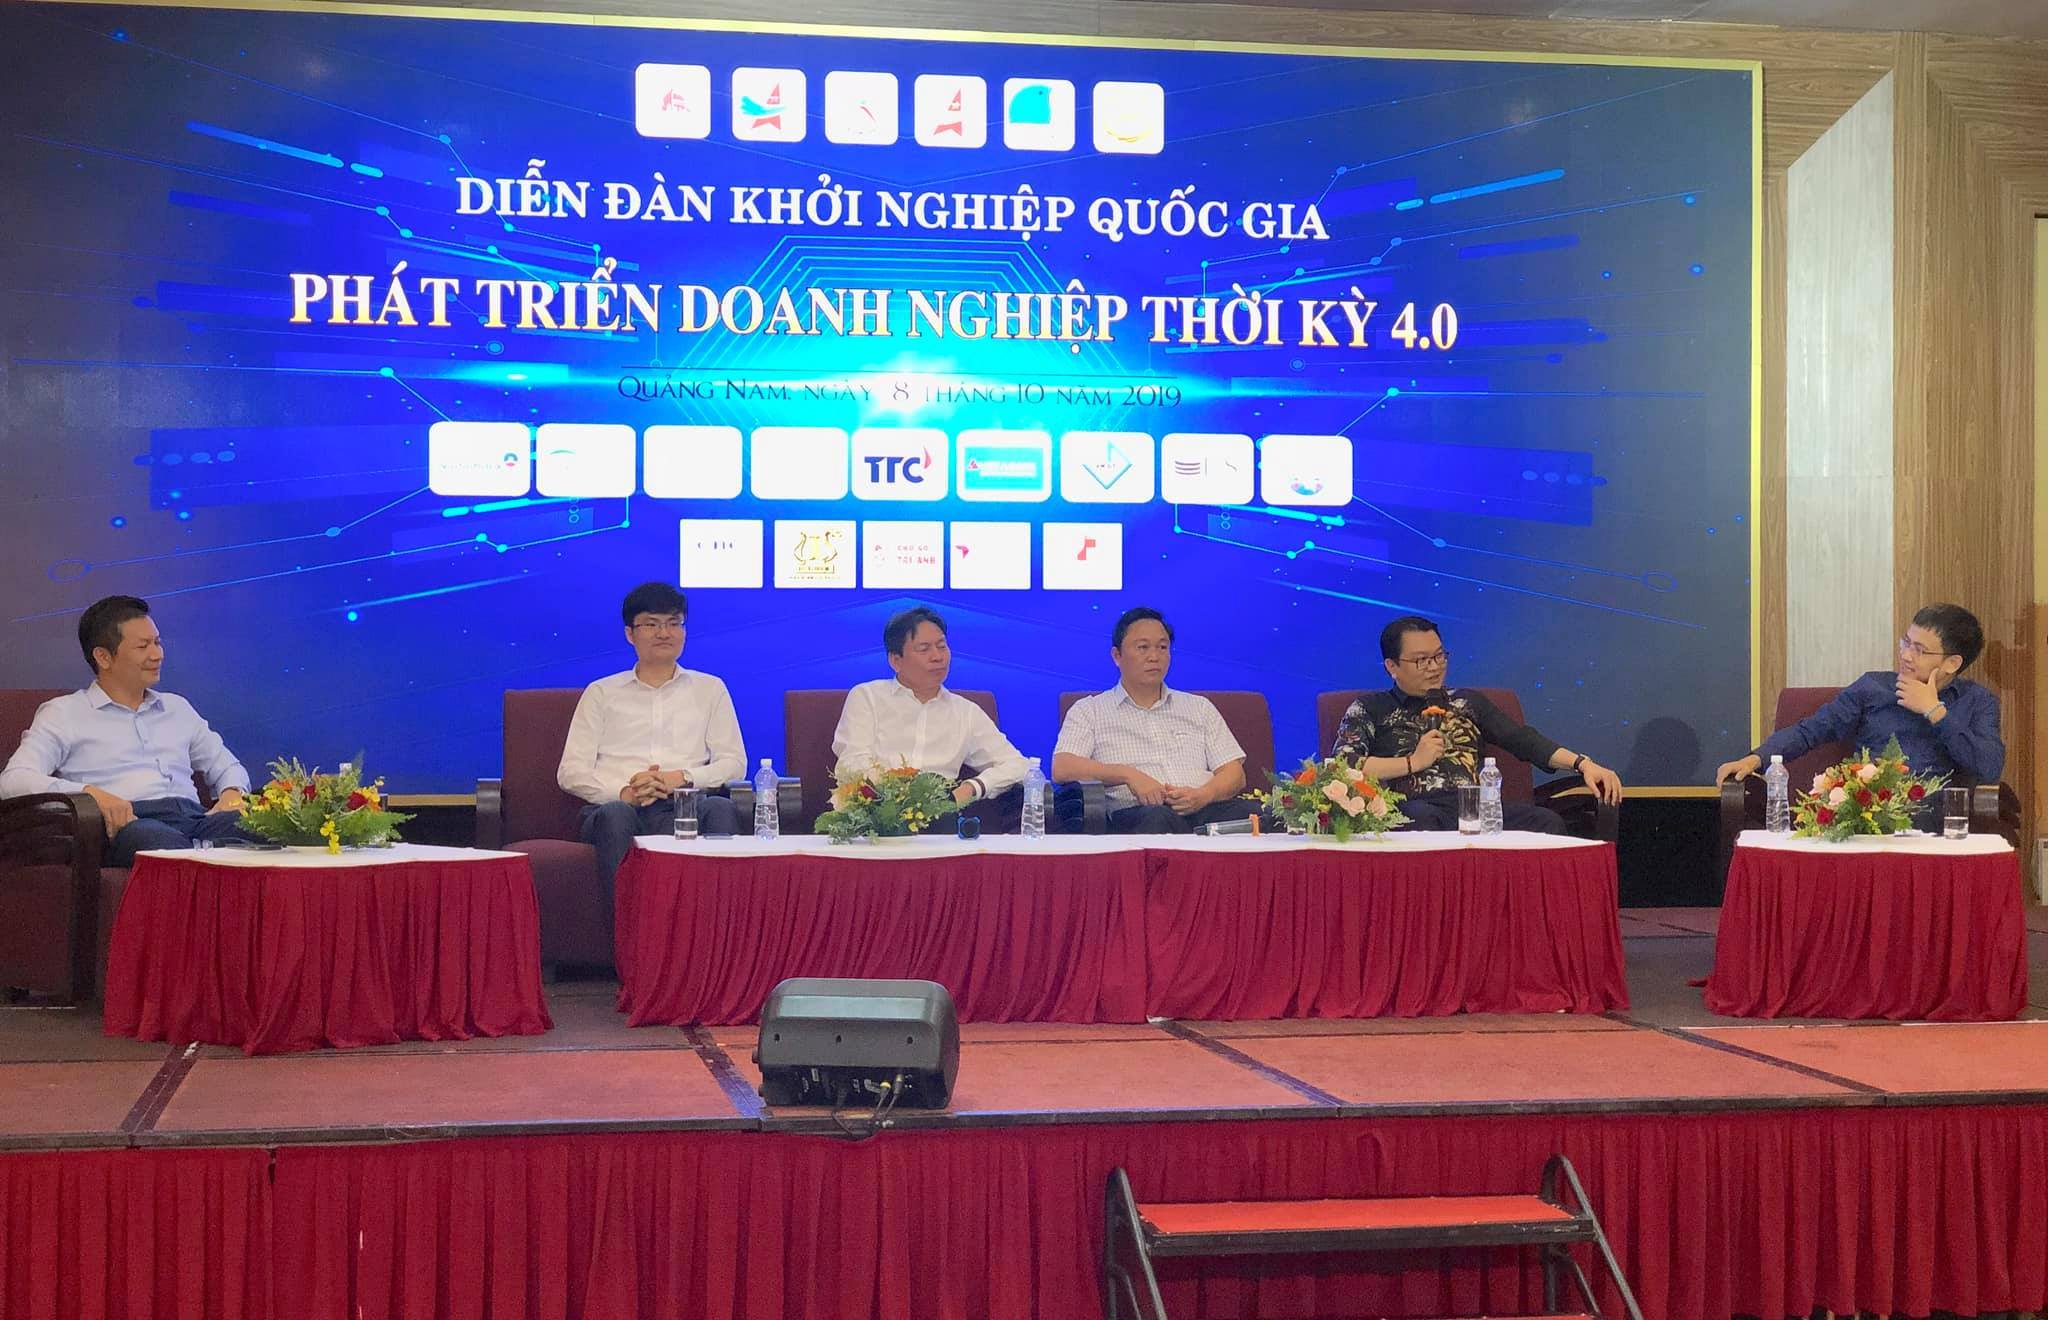 Ông Trần Quốc Bảo – Chủ tịch HHDN tỉnh Quảng Nam tham dự diễn đàn khởi nghiệp quốc gia với chủ đề : Phát triển doanh nghiệp thời kỳ 4.0”